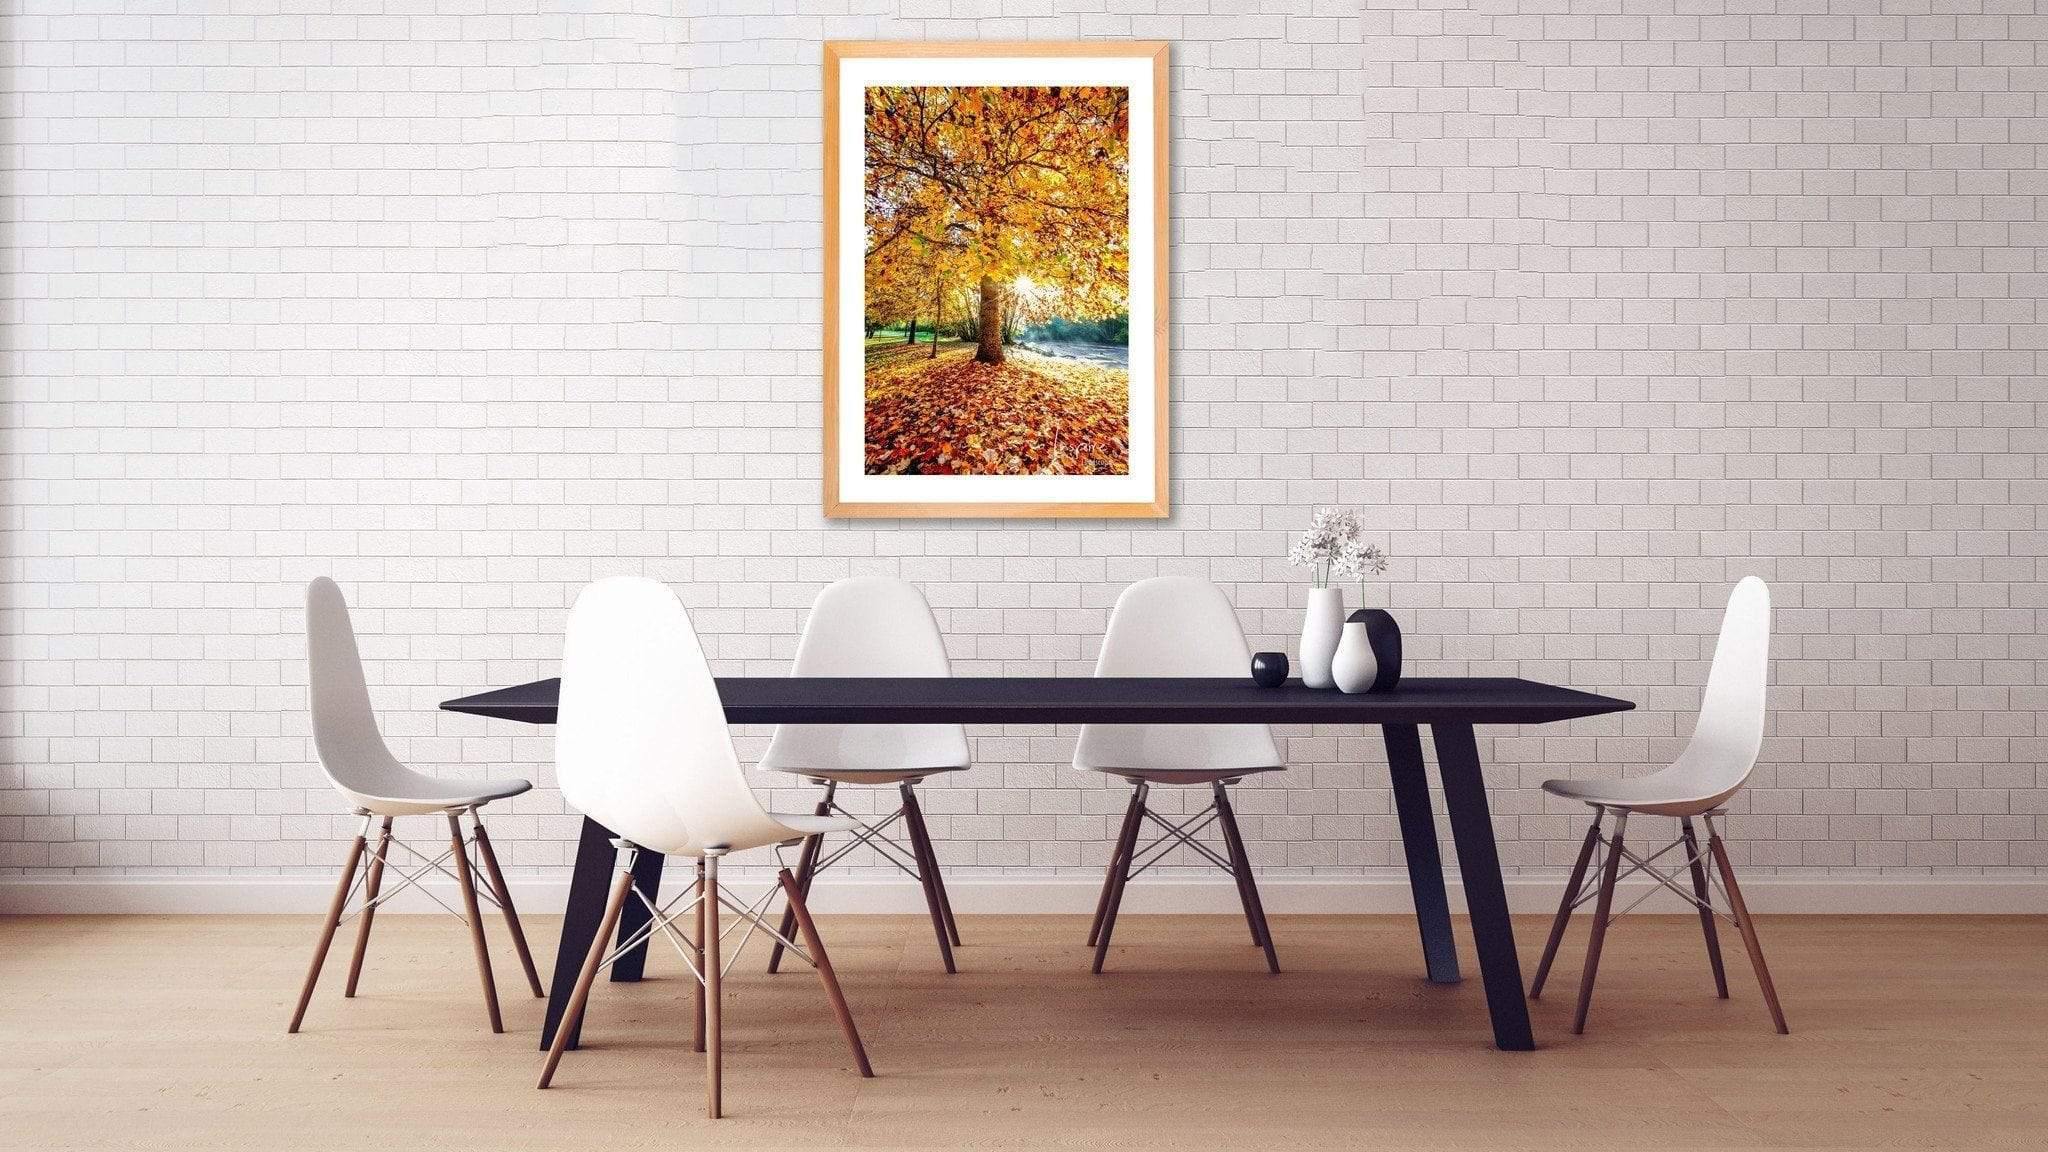 Autumn Colours-Tom-Putt-Landscape-Prints